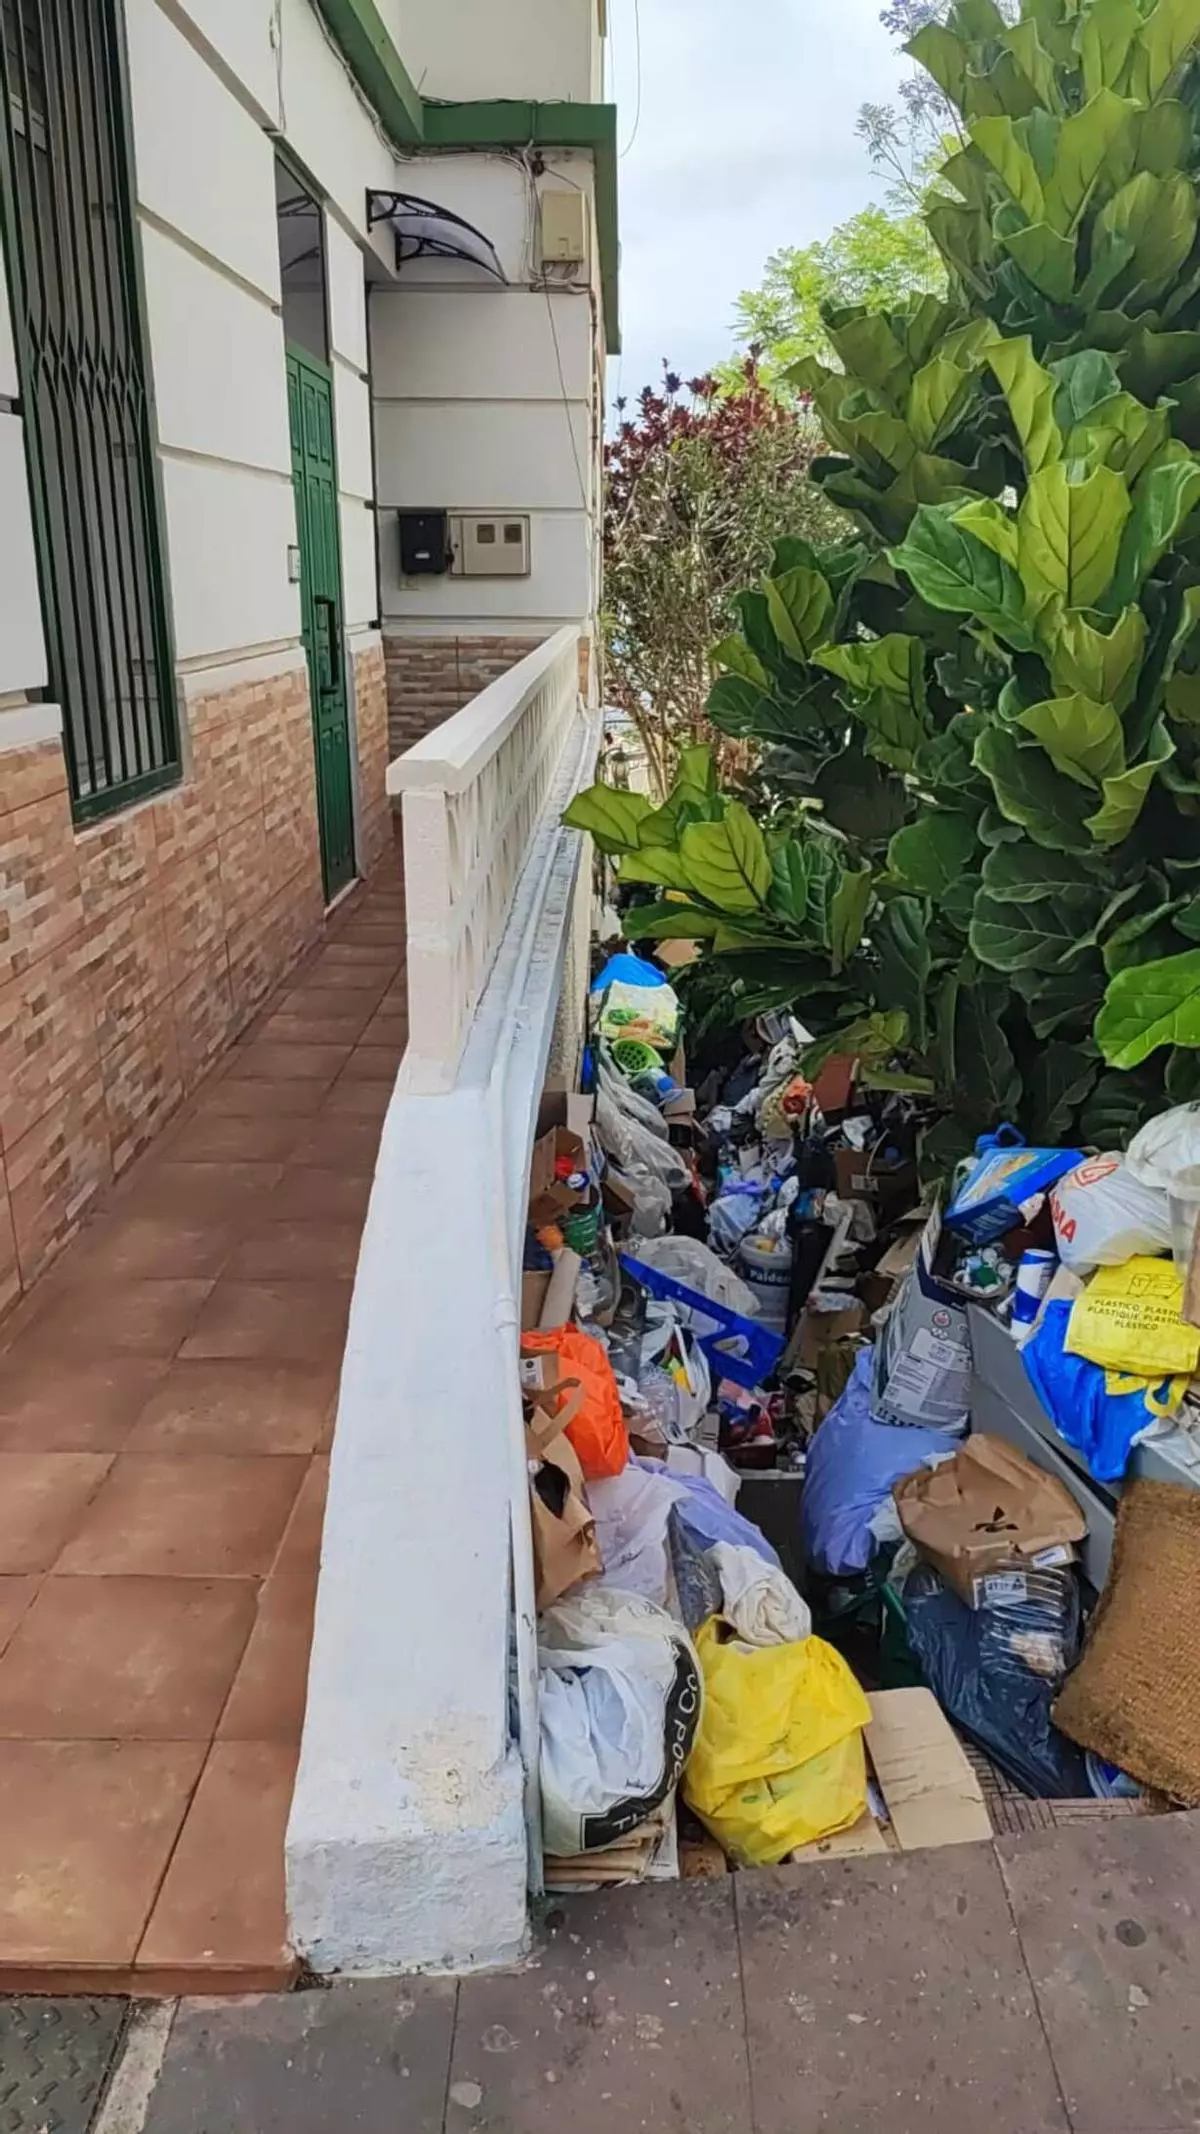 "Vive sin luz ni agua y se baña en los aseos de un supermercado": la acumulación de basura en una vivienda causa una insalubre situación en Tacoronte